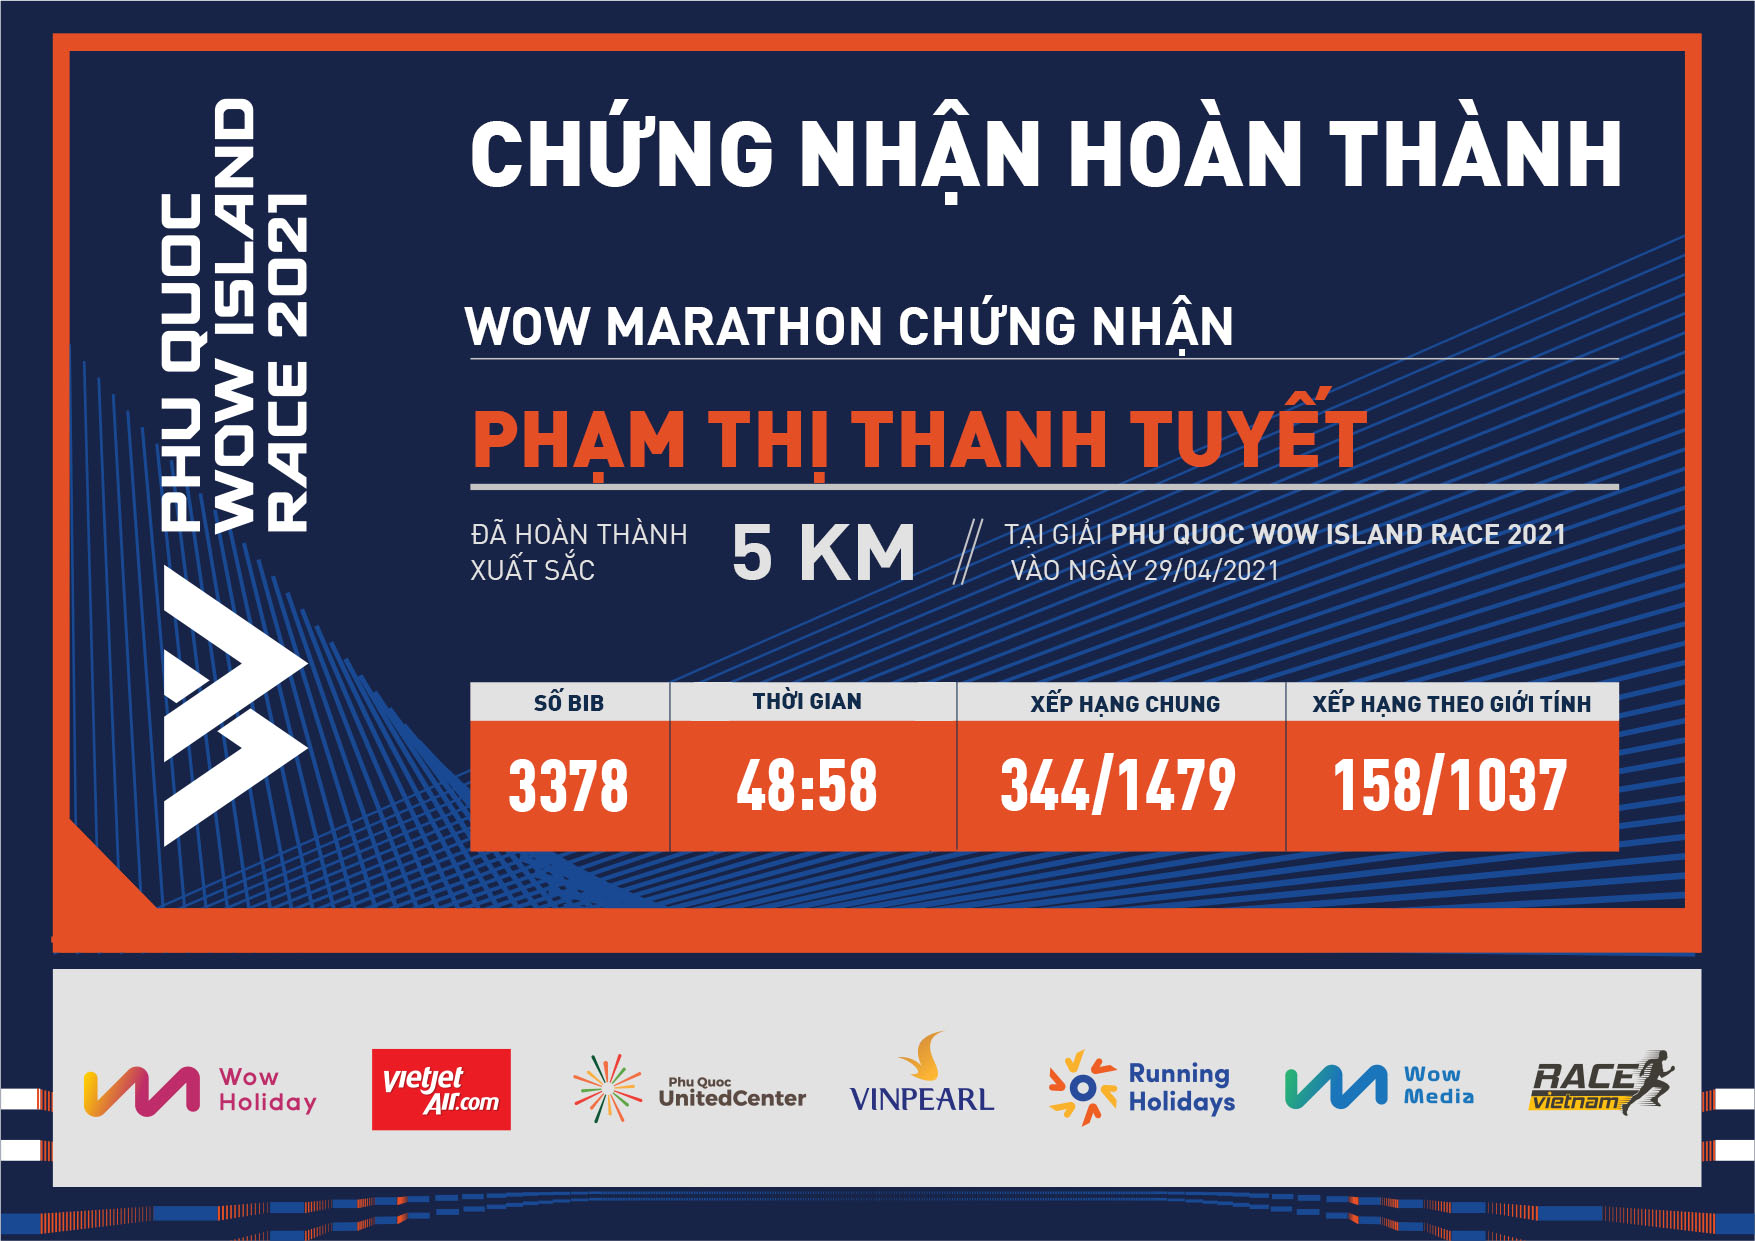 3378 - Phạm Thị Thanh Tuyết